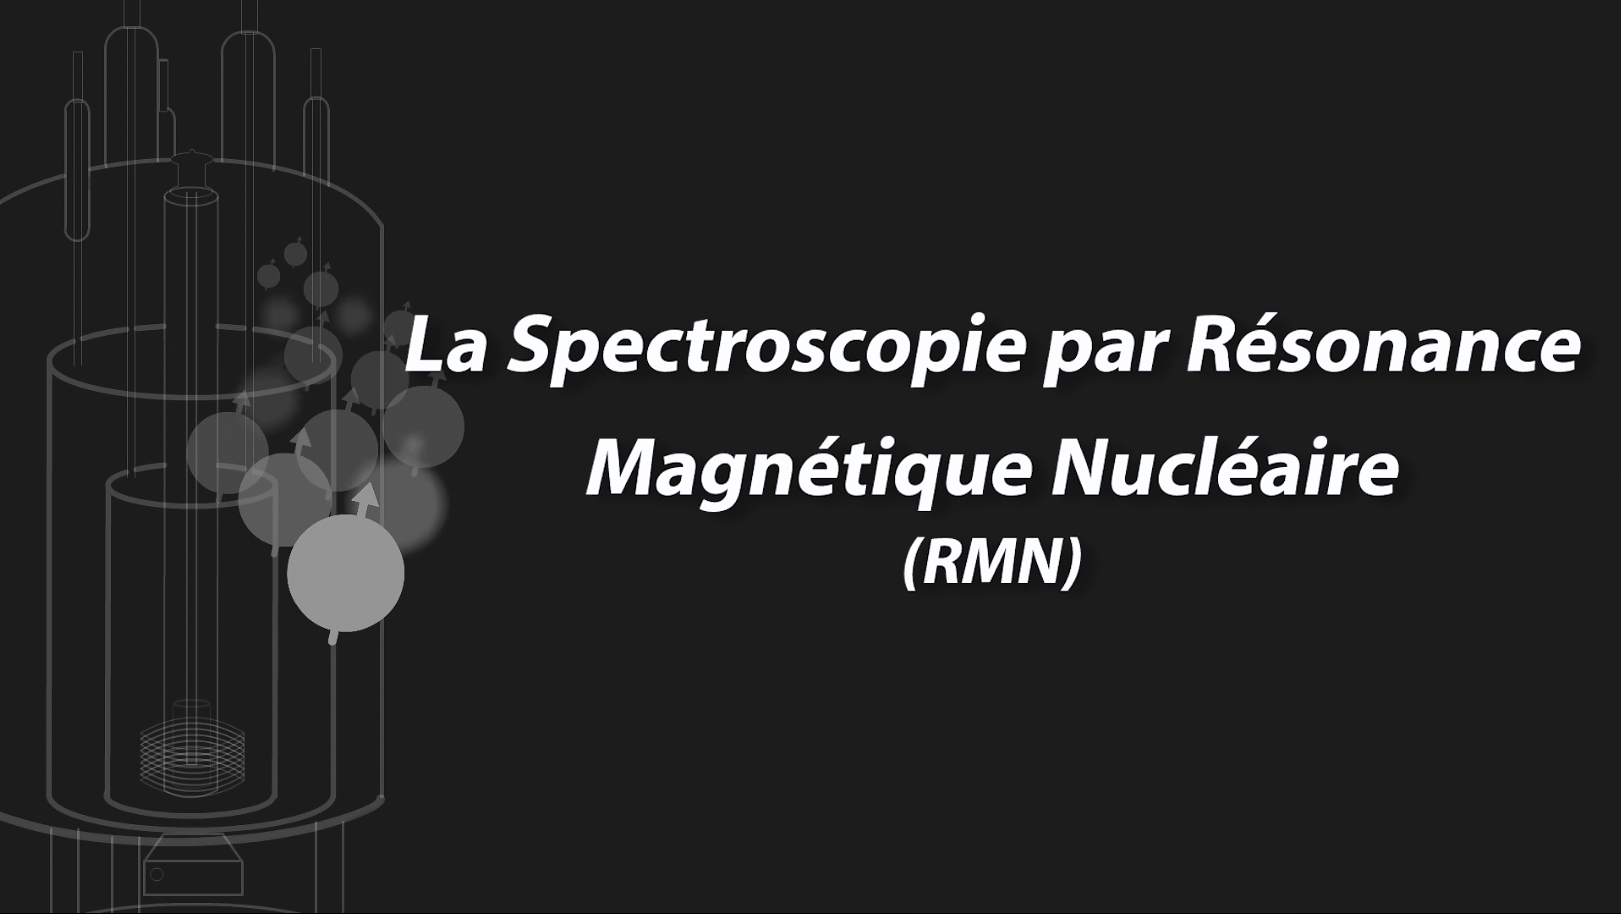 La spectroscopie par résonance magnétique nucléaire (RMN) - Analyse de substances naturelles